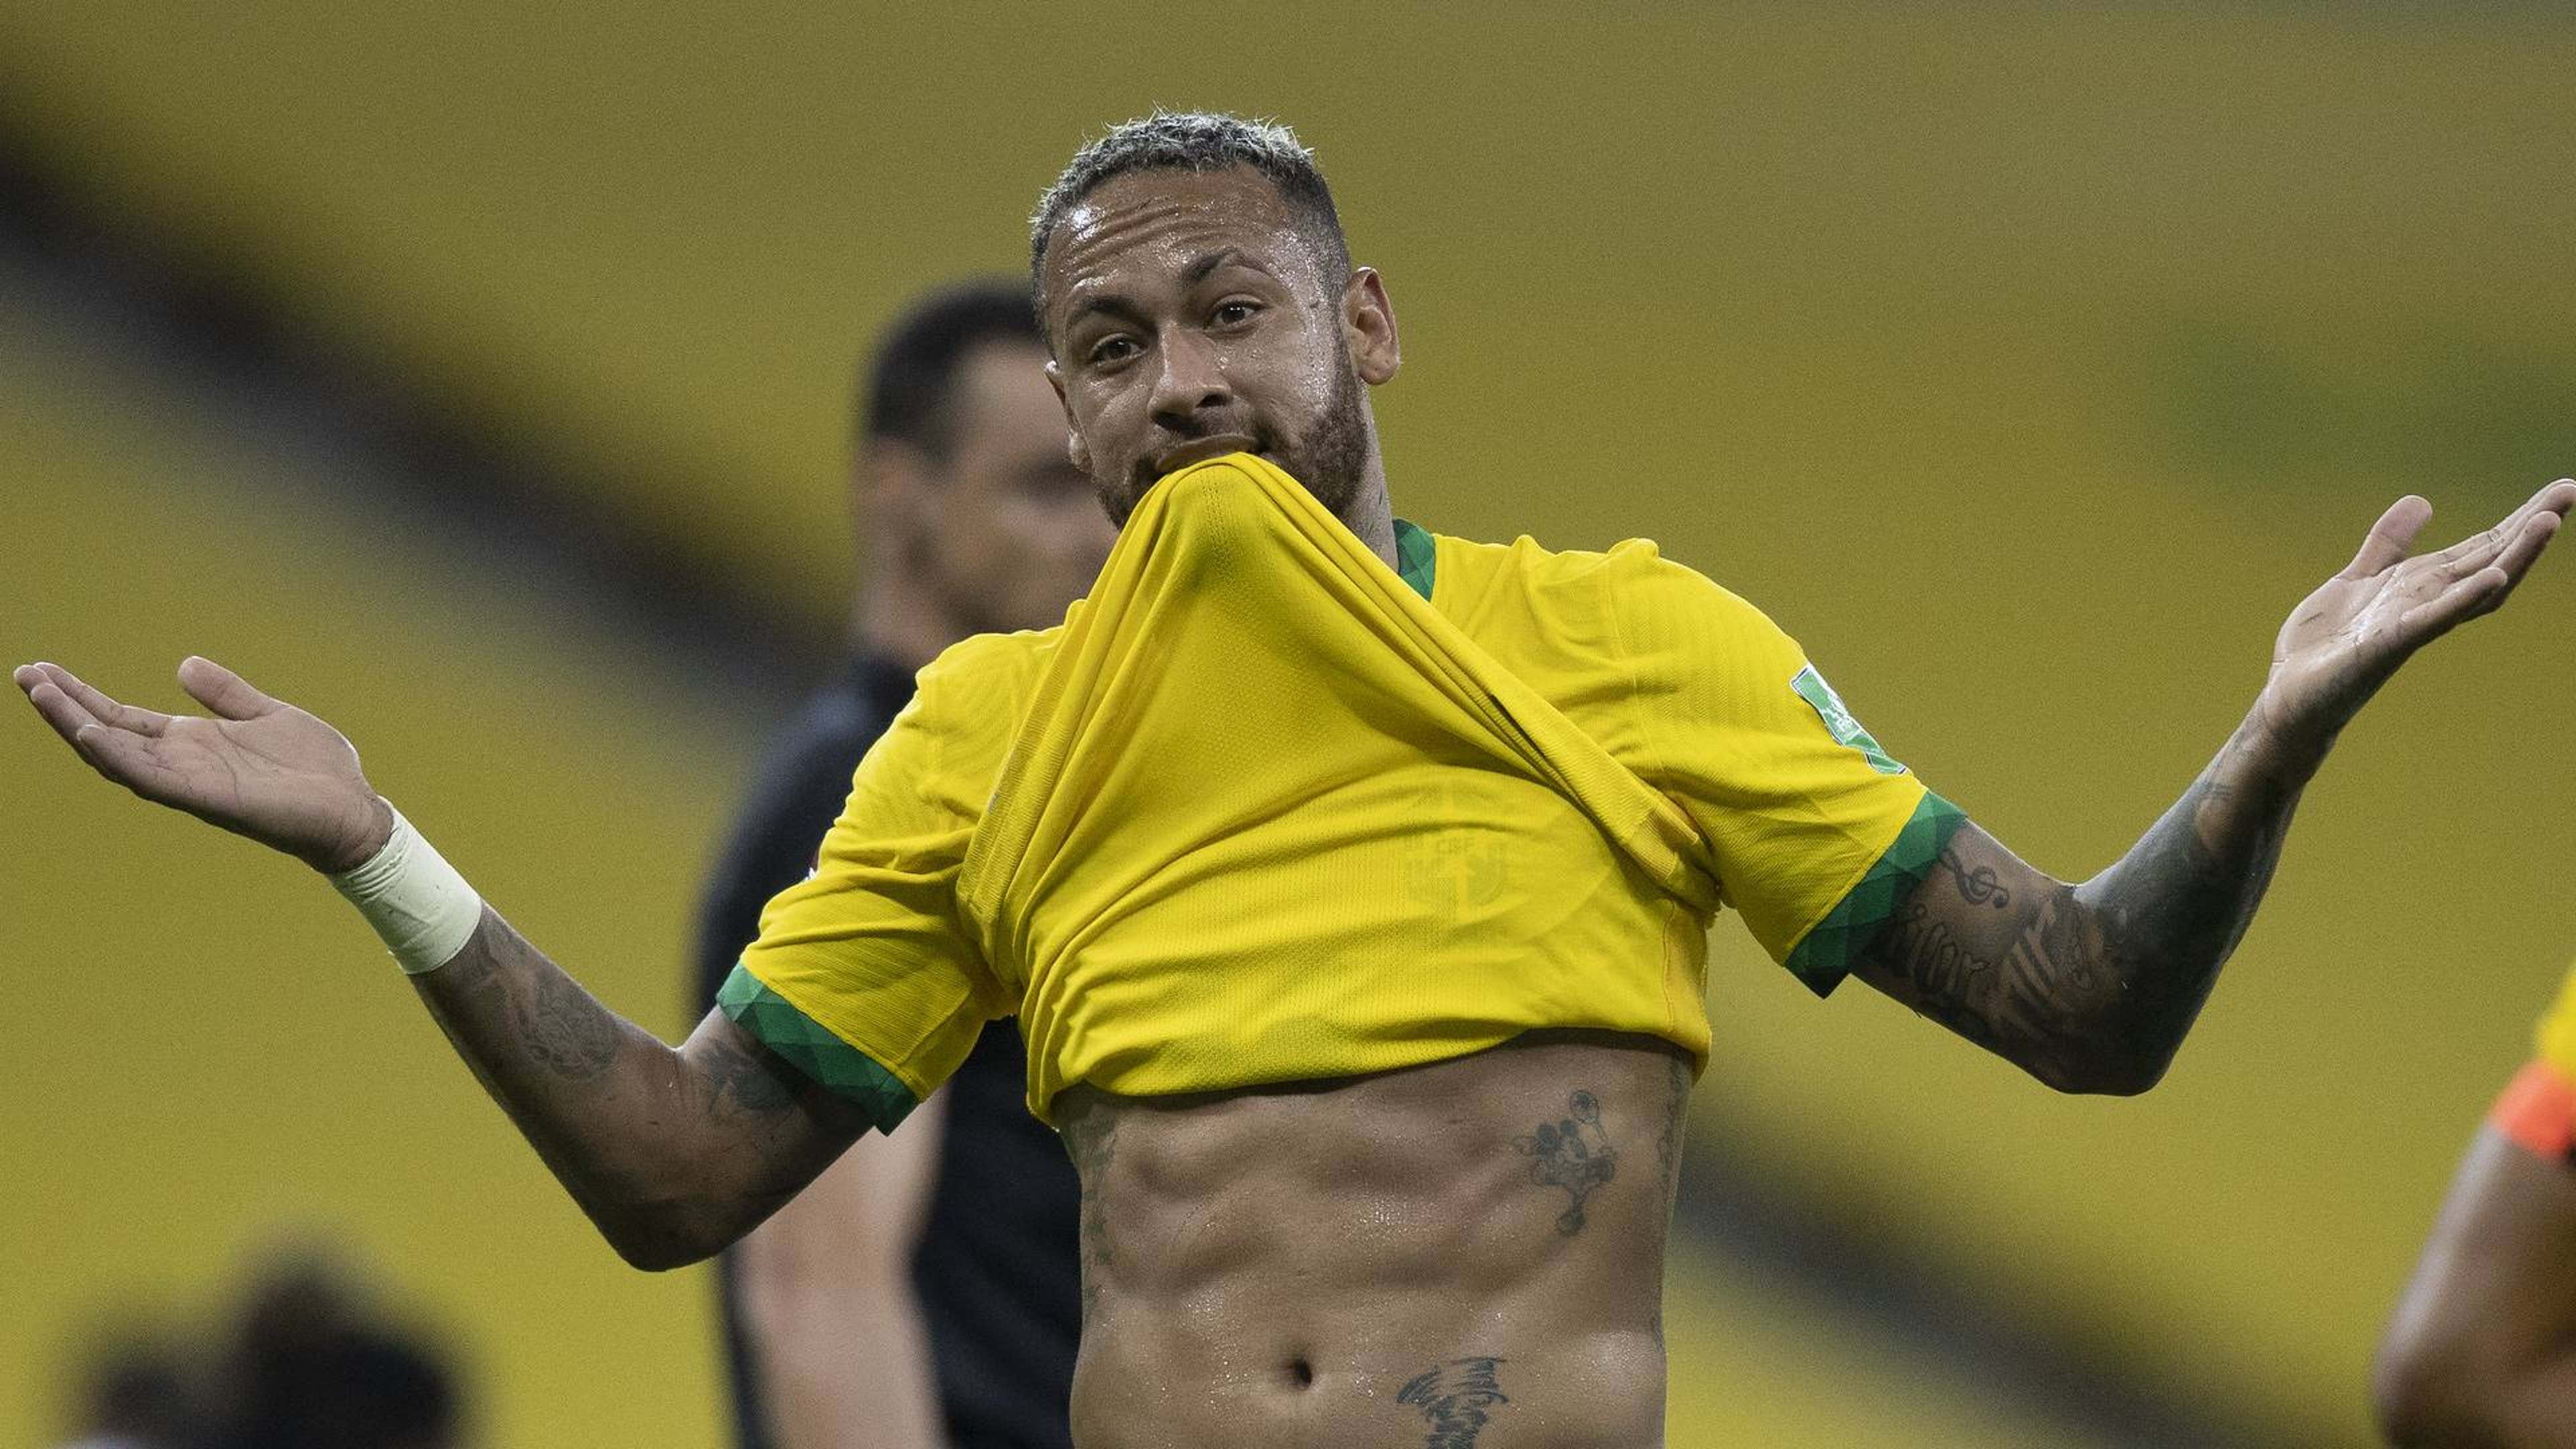 Fora de forma? Neymar diz que está no peso ideal: Camisa era G. No próximo  jogo peço M, seleção brasileira